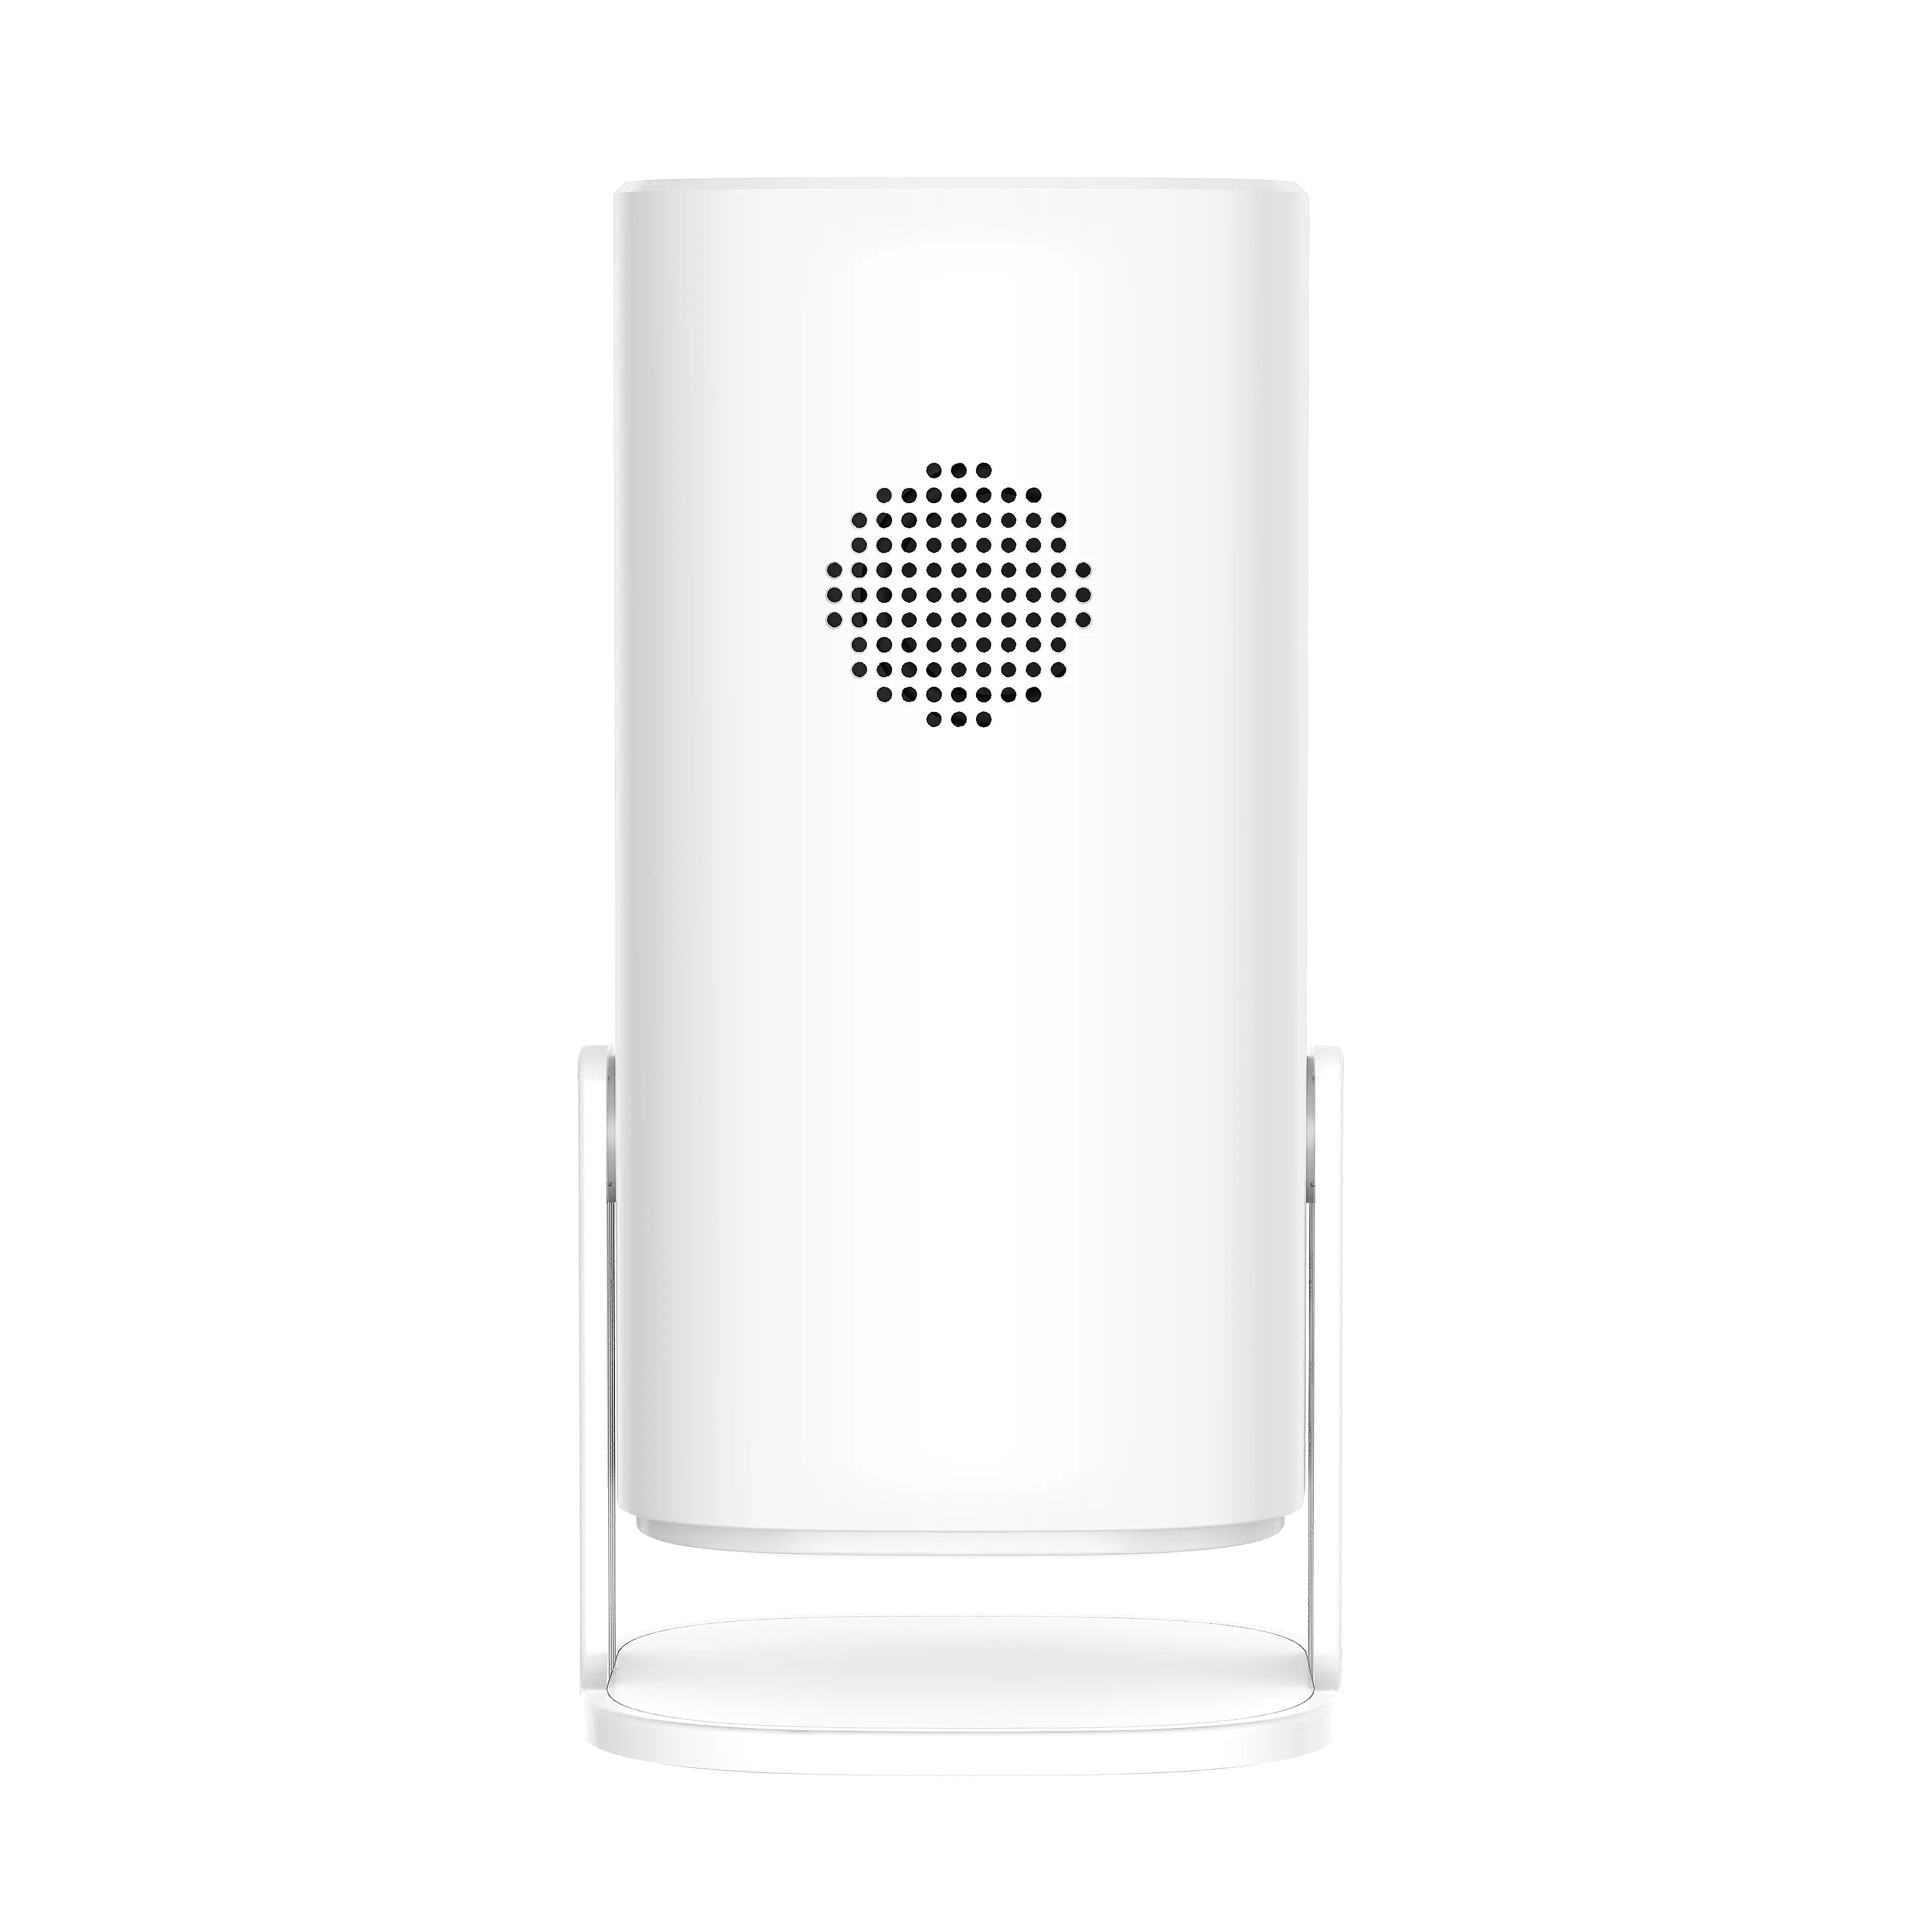 Syta P30 proyektor Aplikasi hiburan, proyektor portabel sudut gaya bebas 4K & Wifi Bluetooth